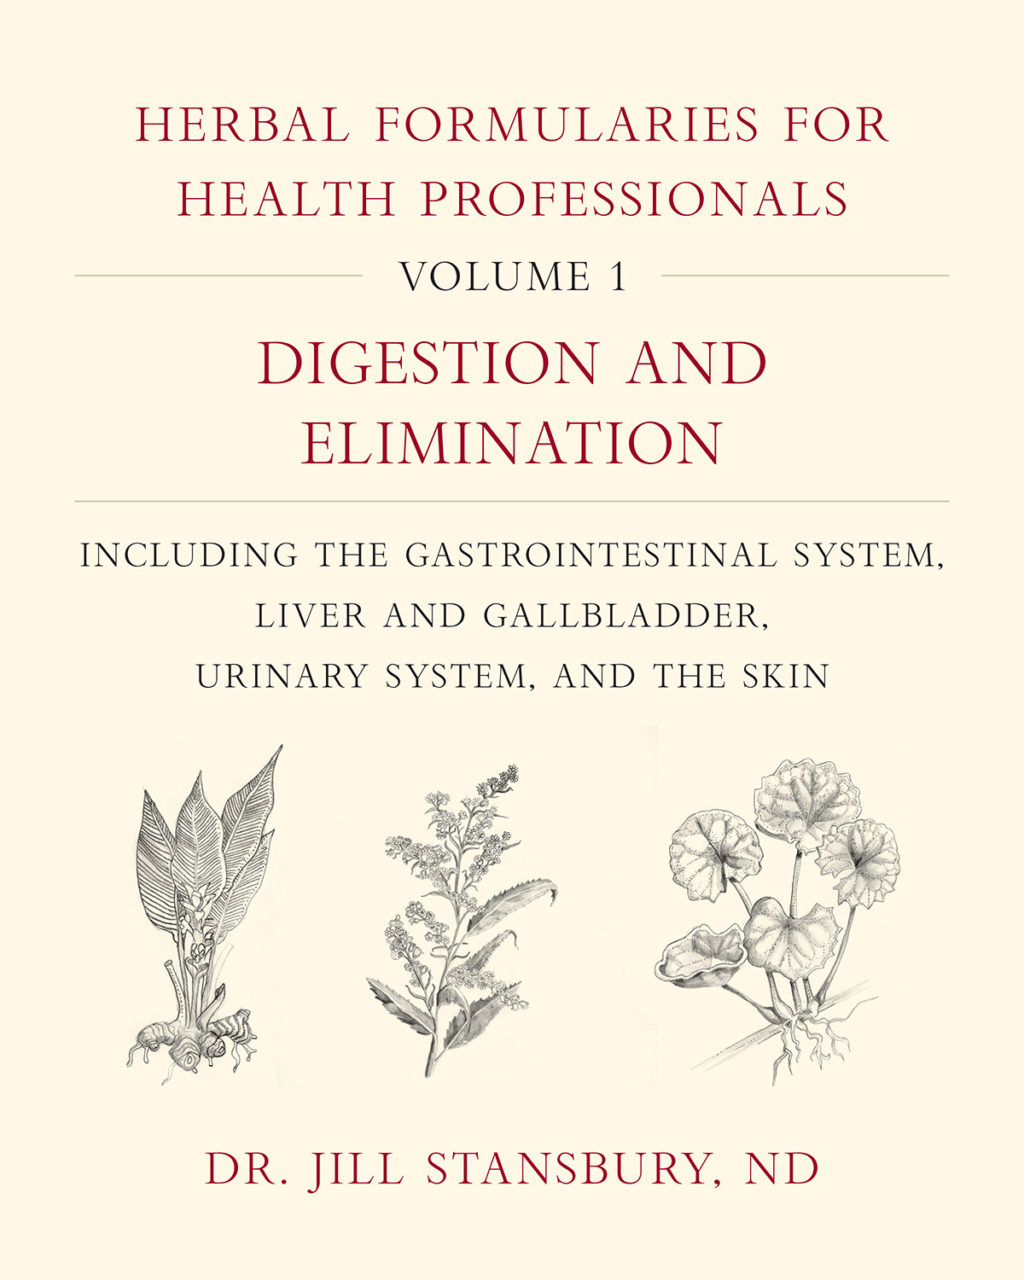 Herbal Formularies Vol 1 cover